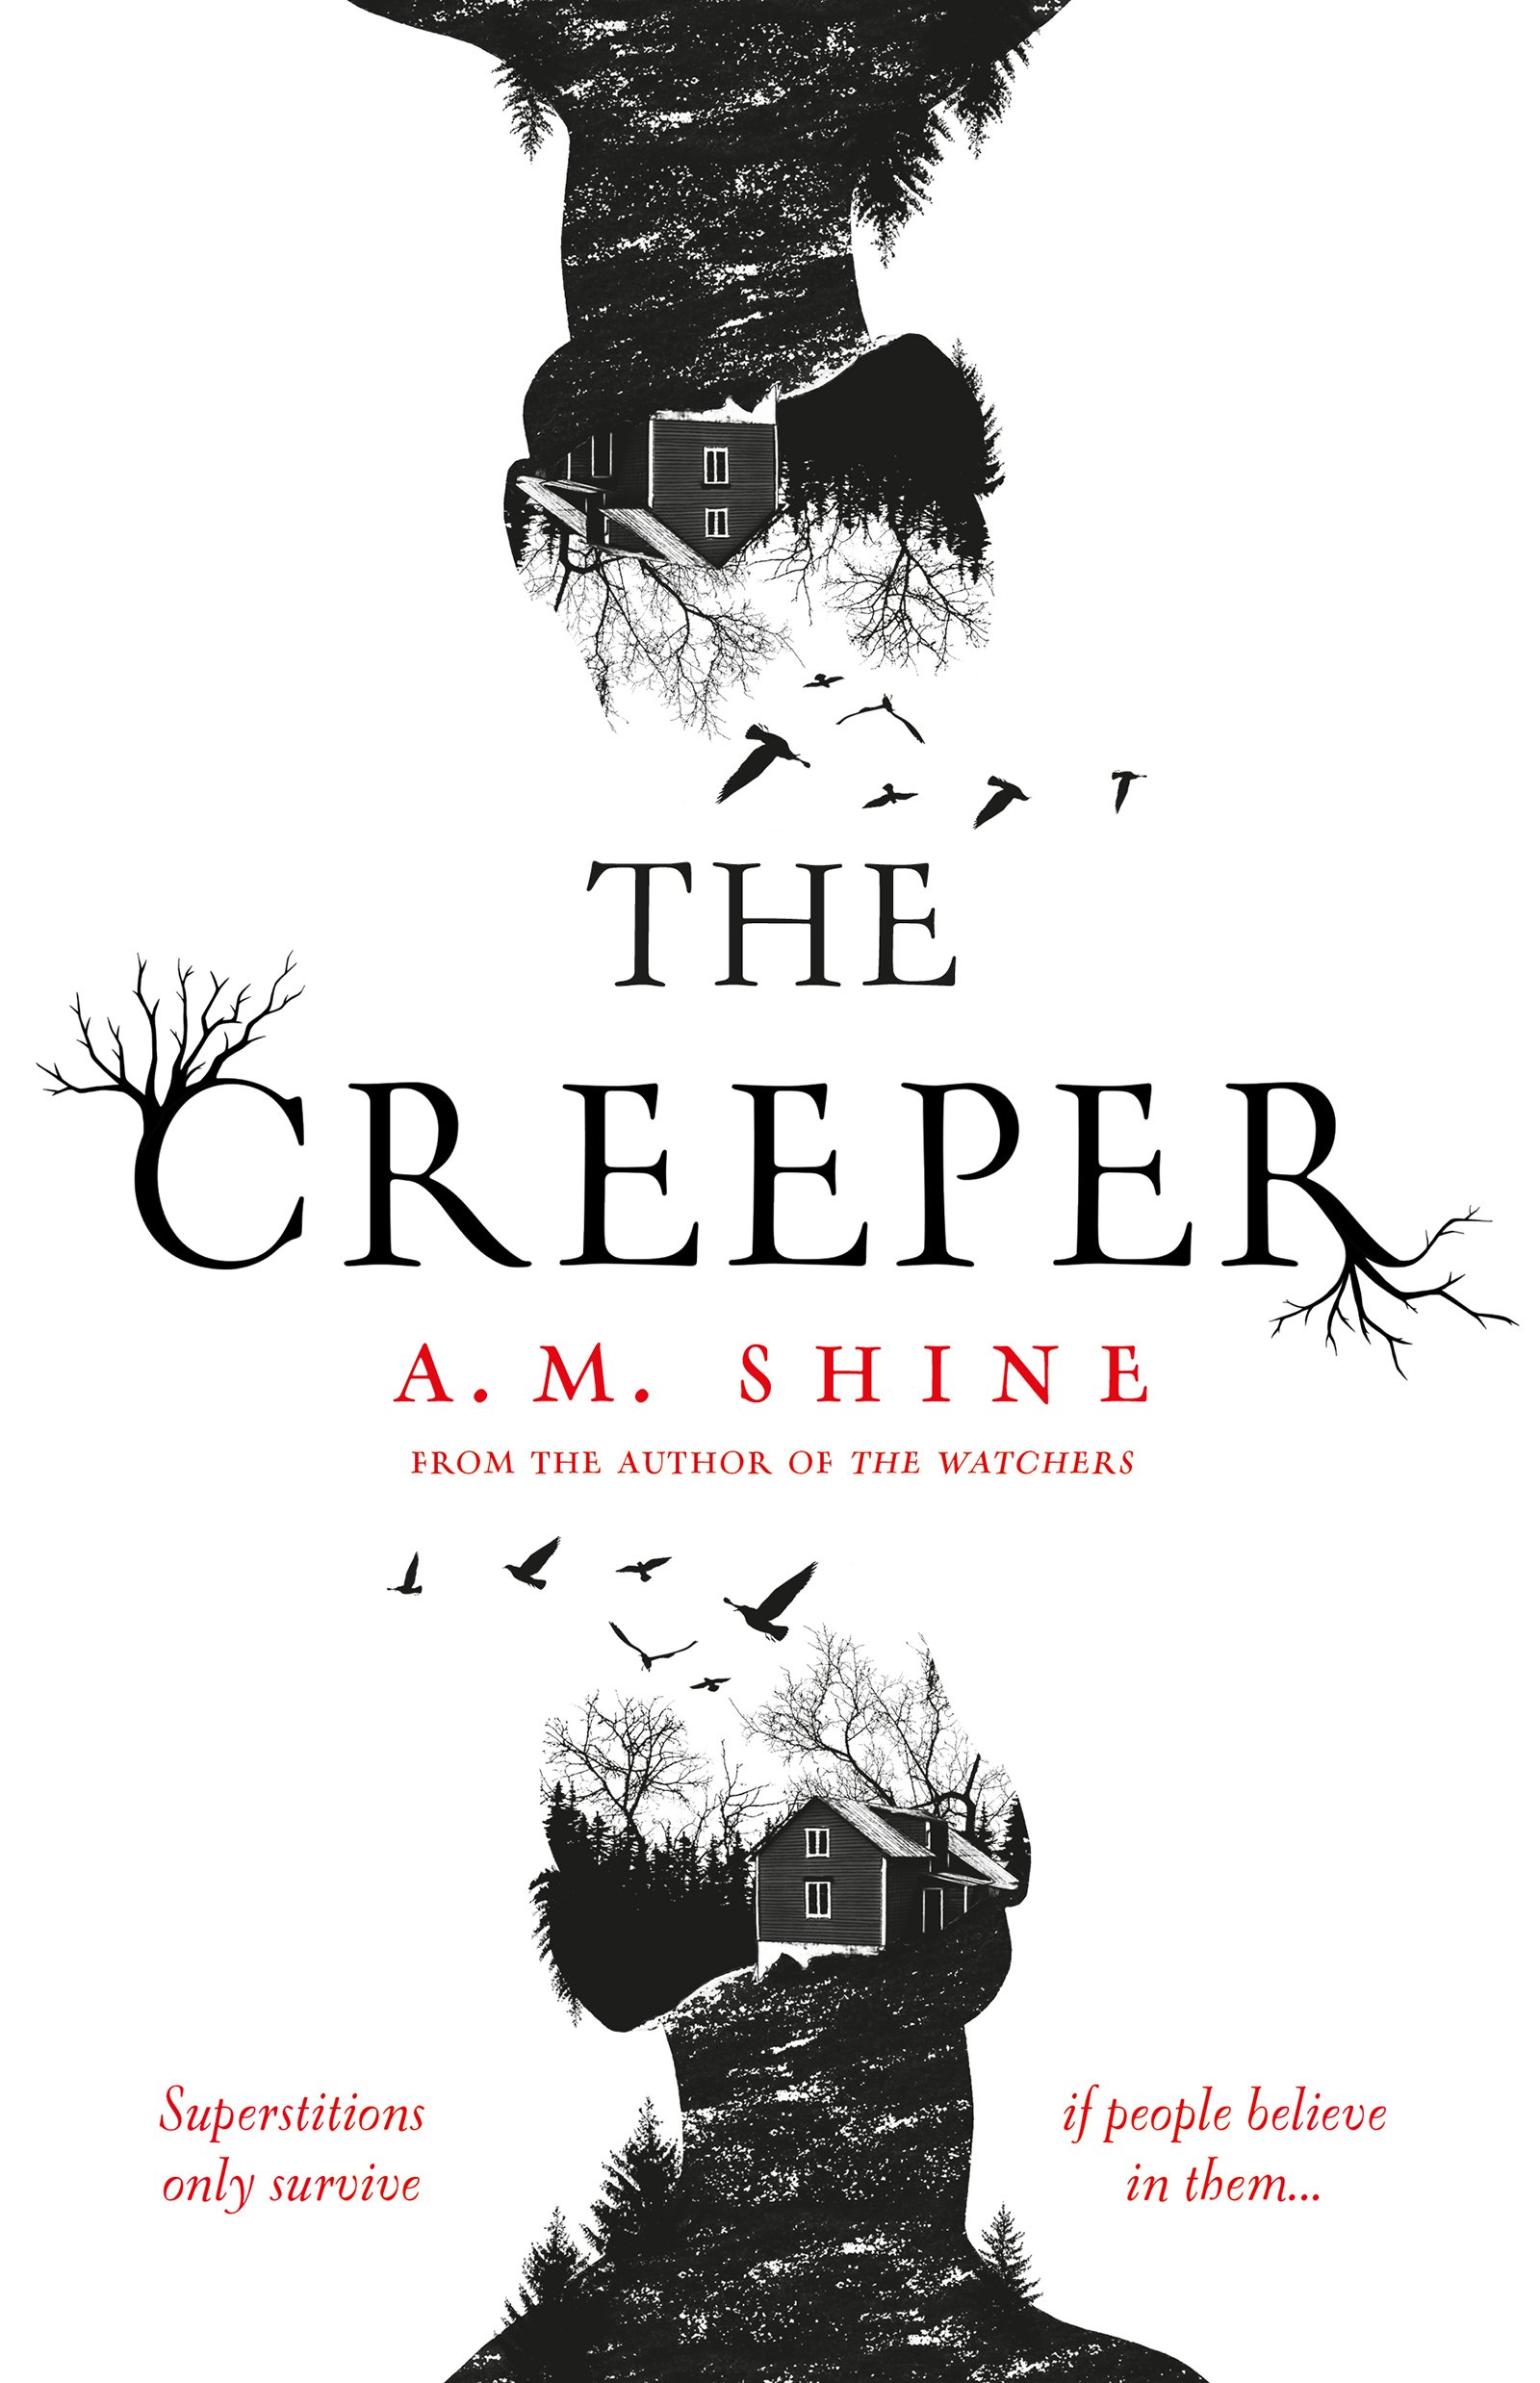 THE CREEPER — A.M. Shine